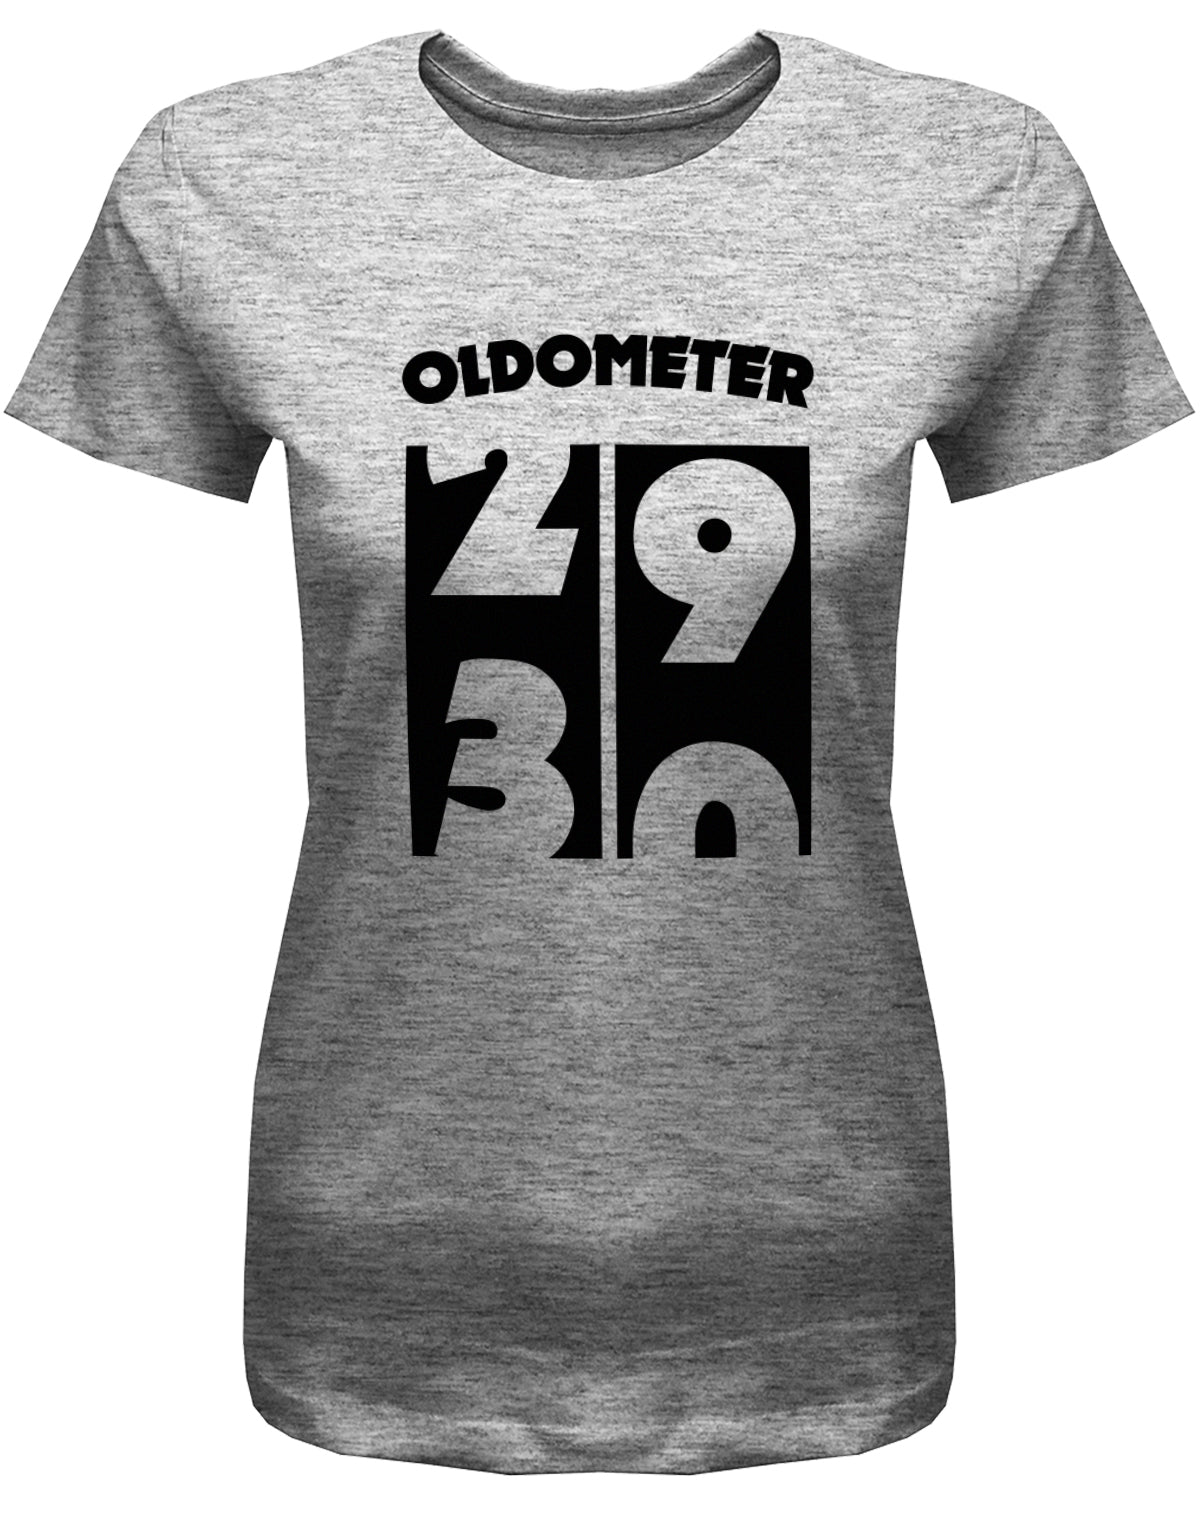 Lustiges T-Shirt zum 30. Geburtstag für die Frau Bedruckt mit Oldometer. Wechsel von 29 auf 30 Jahren. Grau